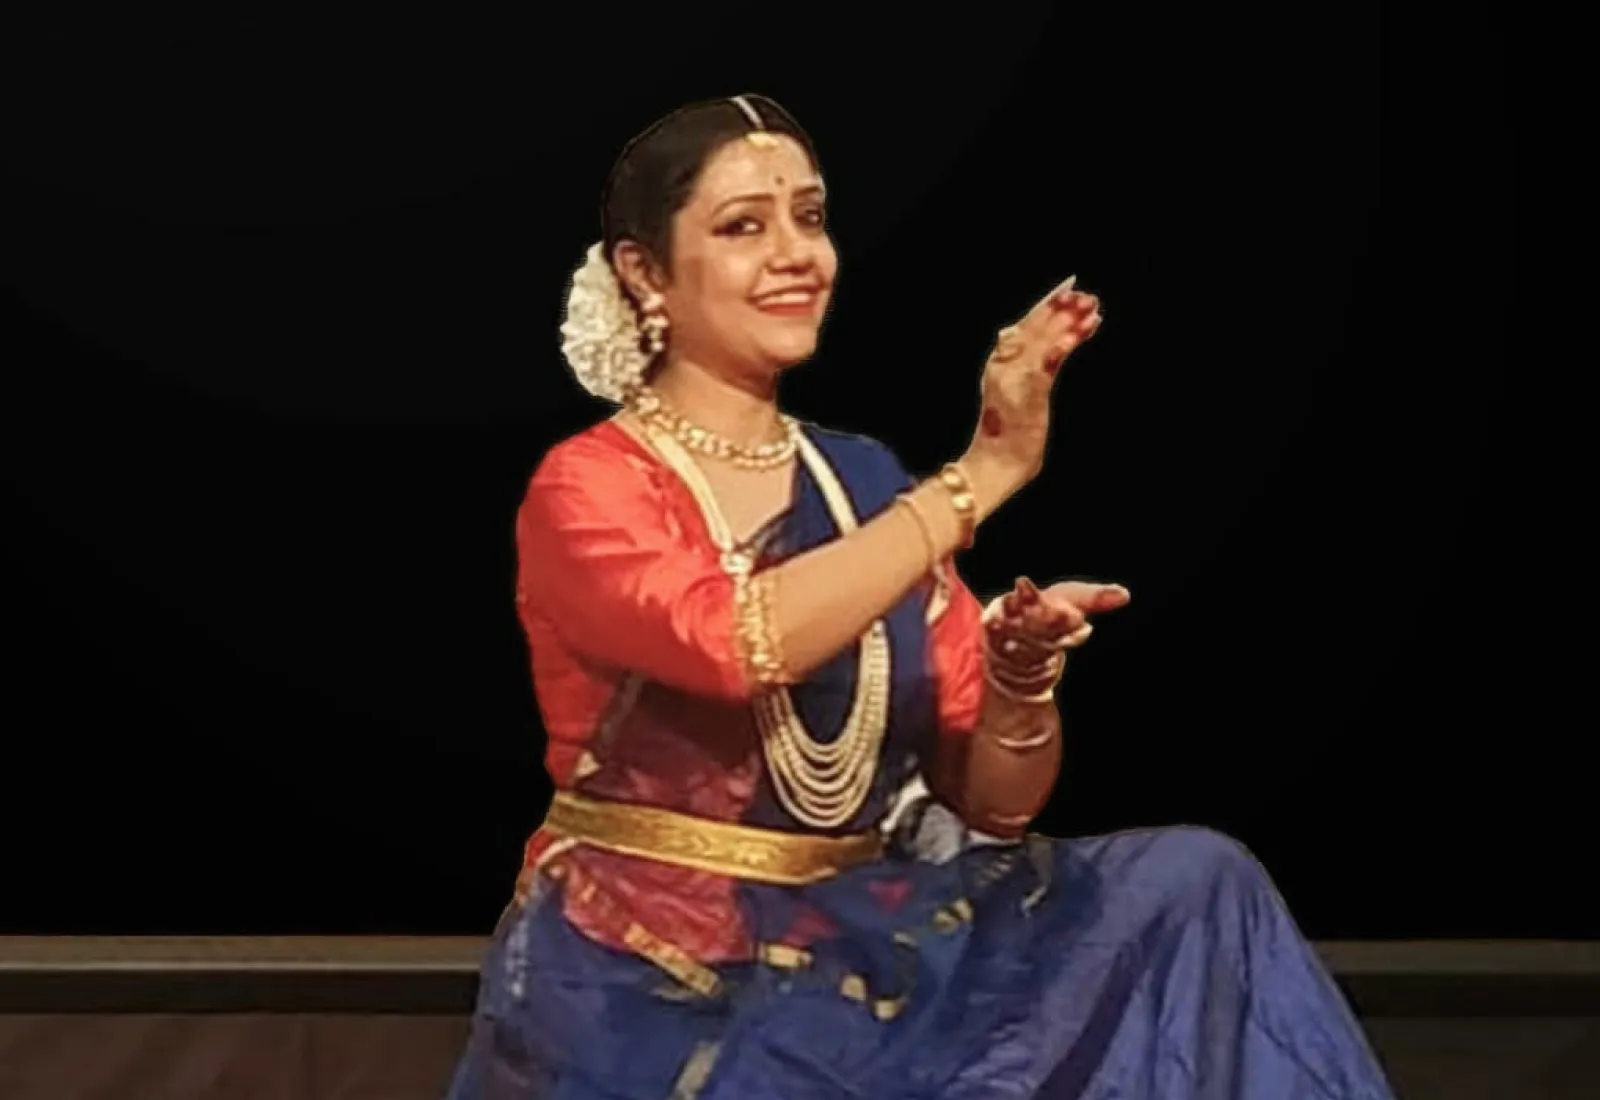 Anindita Mukherjee Basu